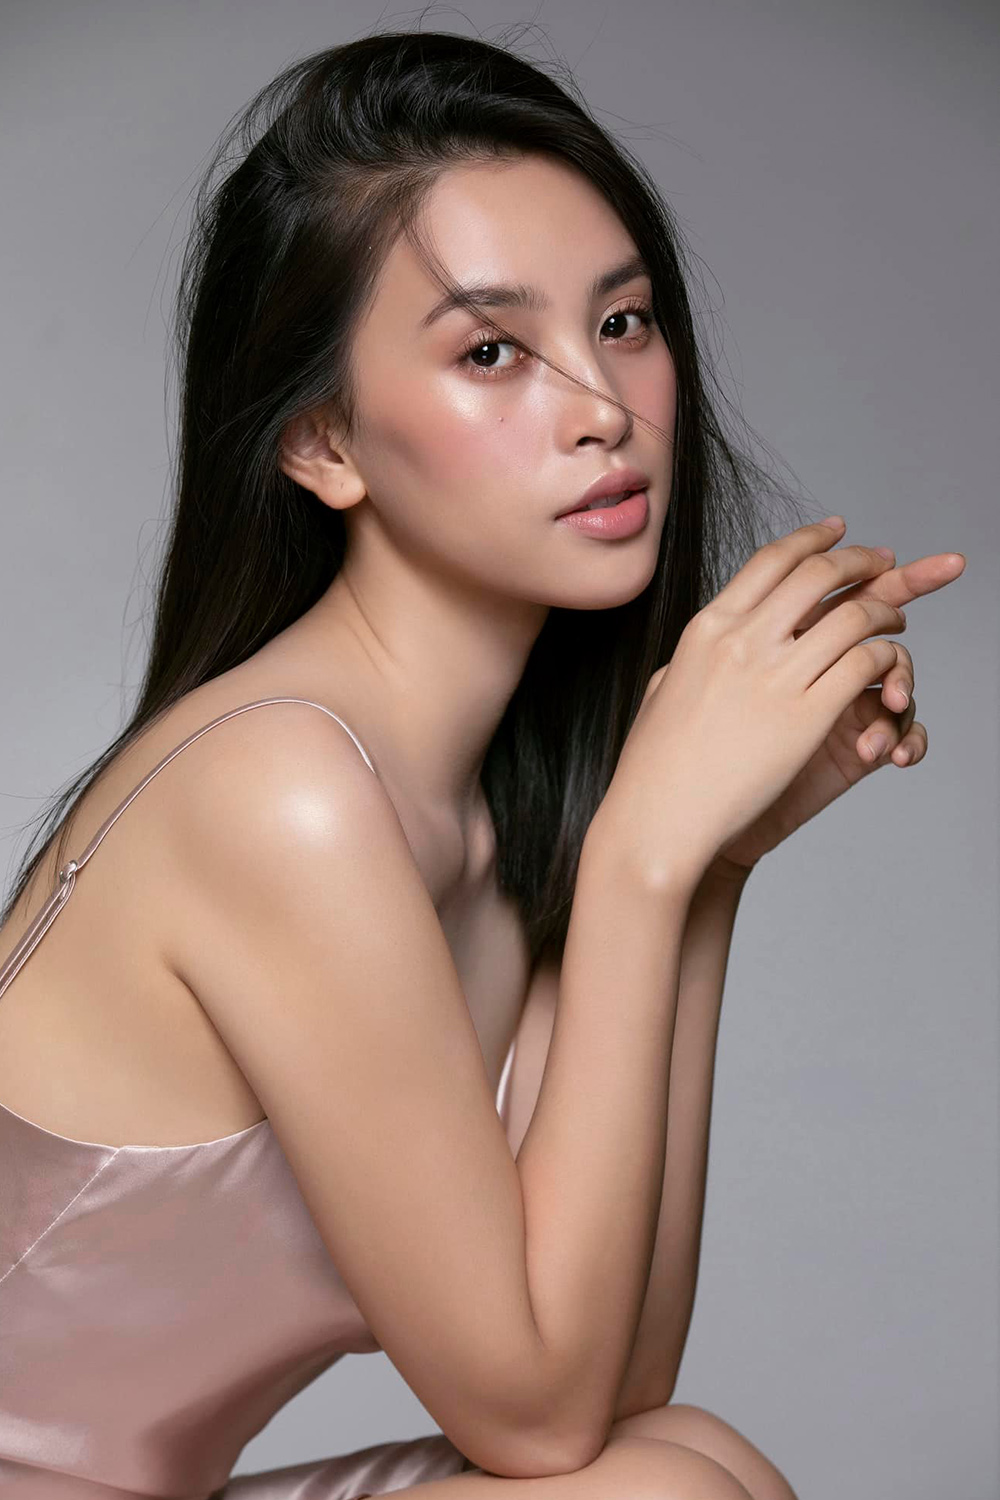 Hoa hậu Tiểu Vy khoe ảnh tốt nghiệp: Nhan sắc mộc mạc vẫn đỉnh cao, được 'bà trùm hoa hậu' đến chúc mừng - ảnh 5